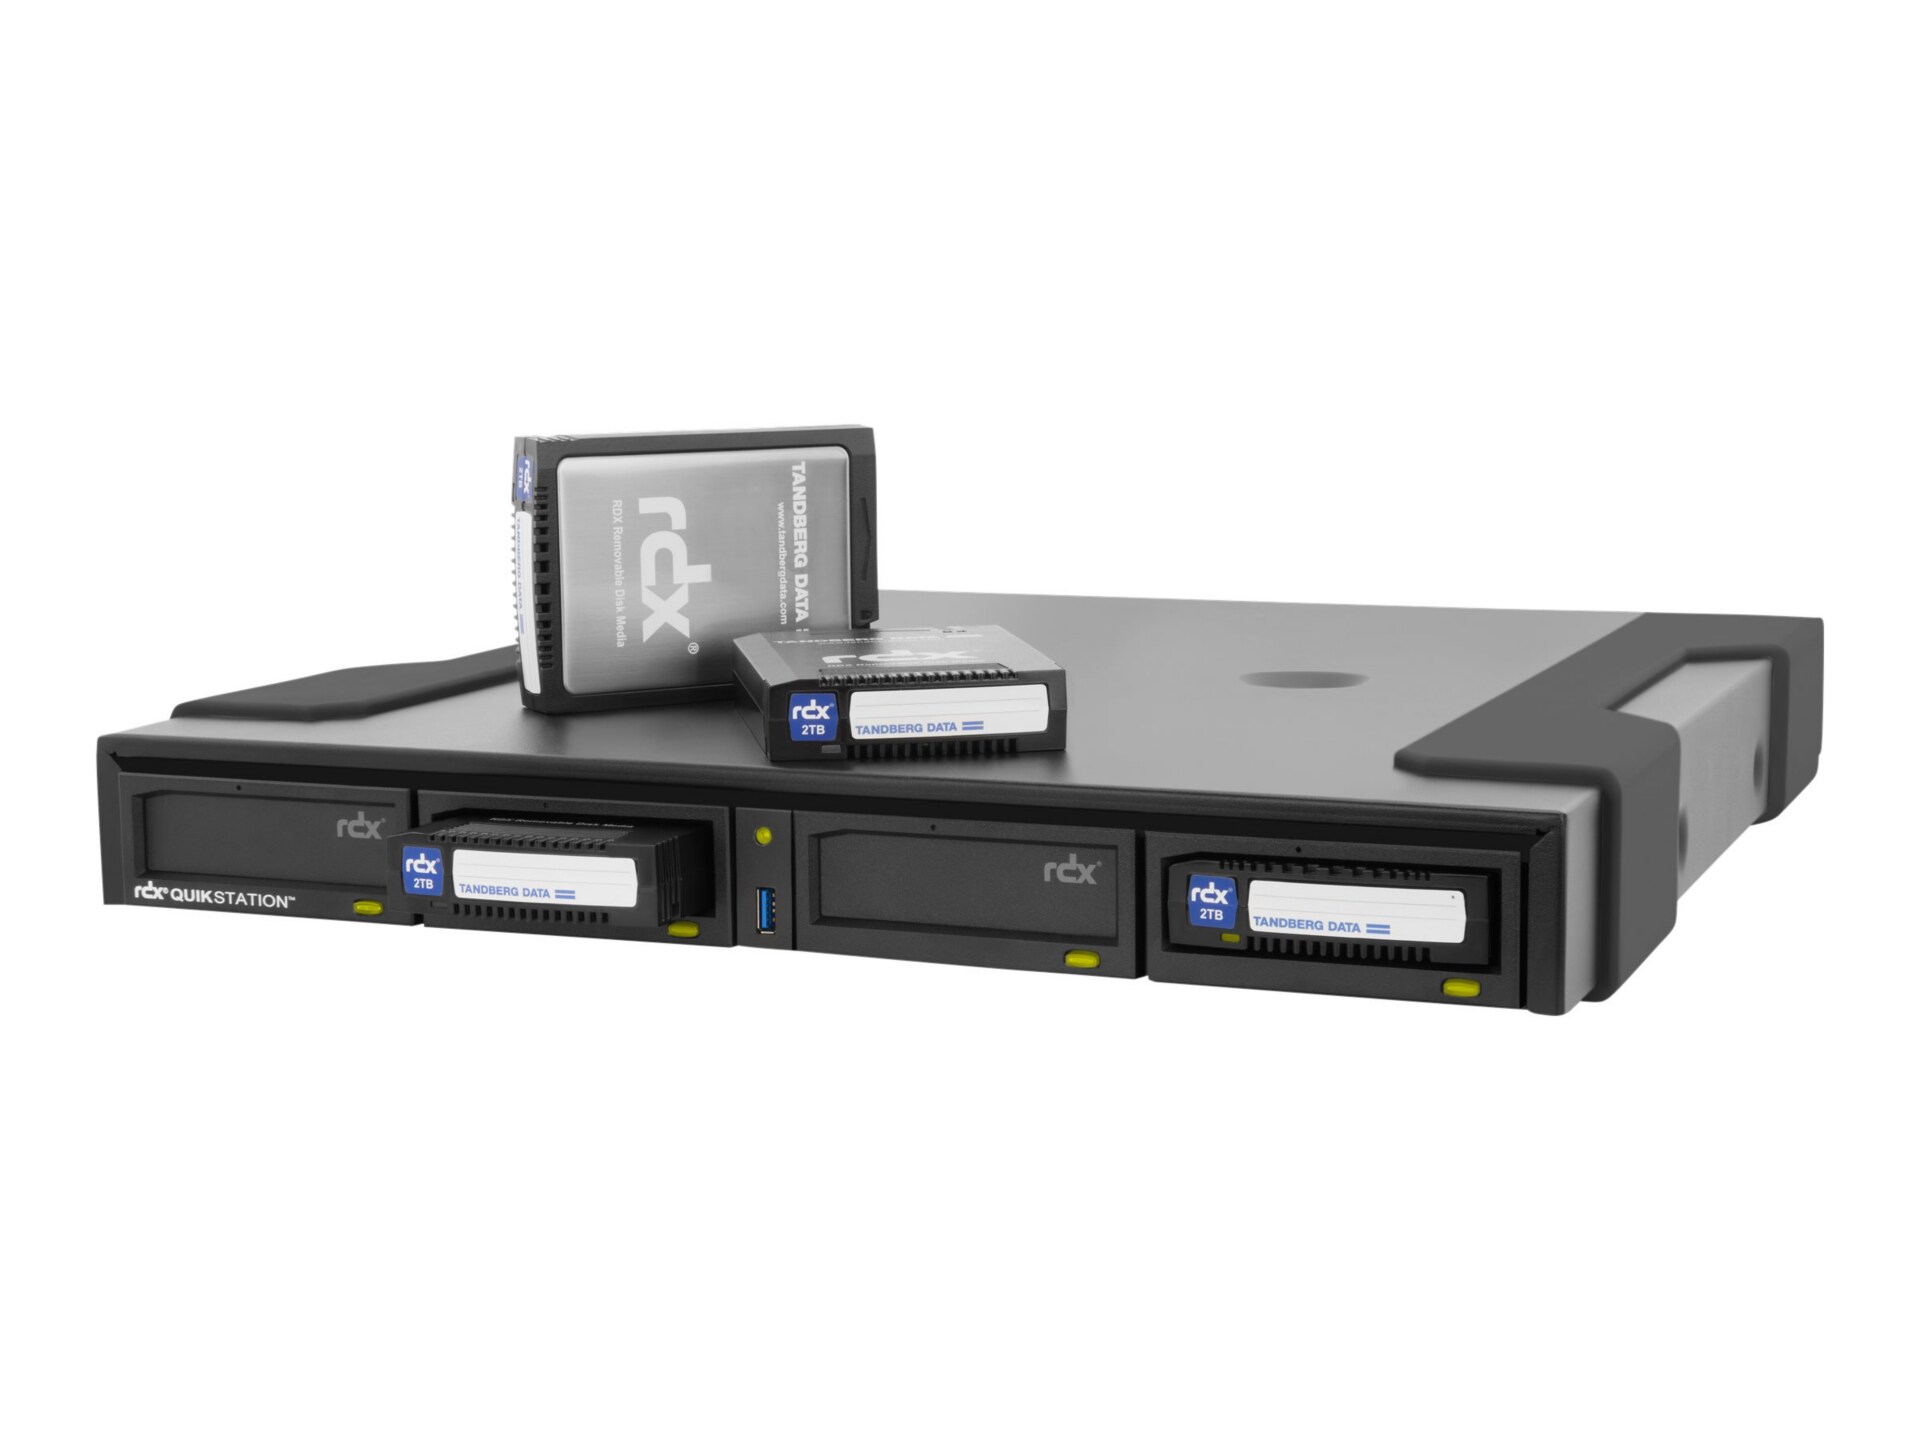 Tandberg RDX QuikStation 4 - RDX library - Gigabit Ethernet - external